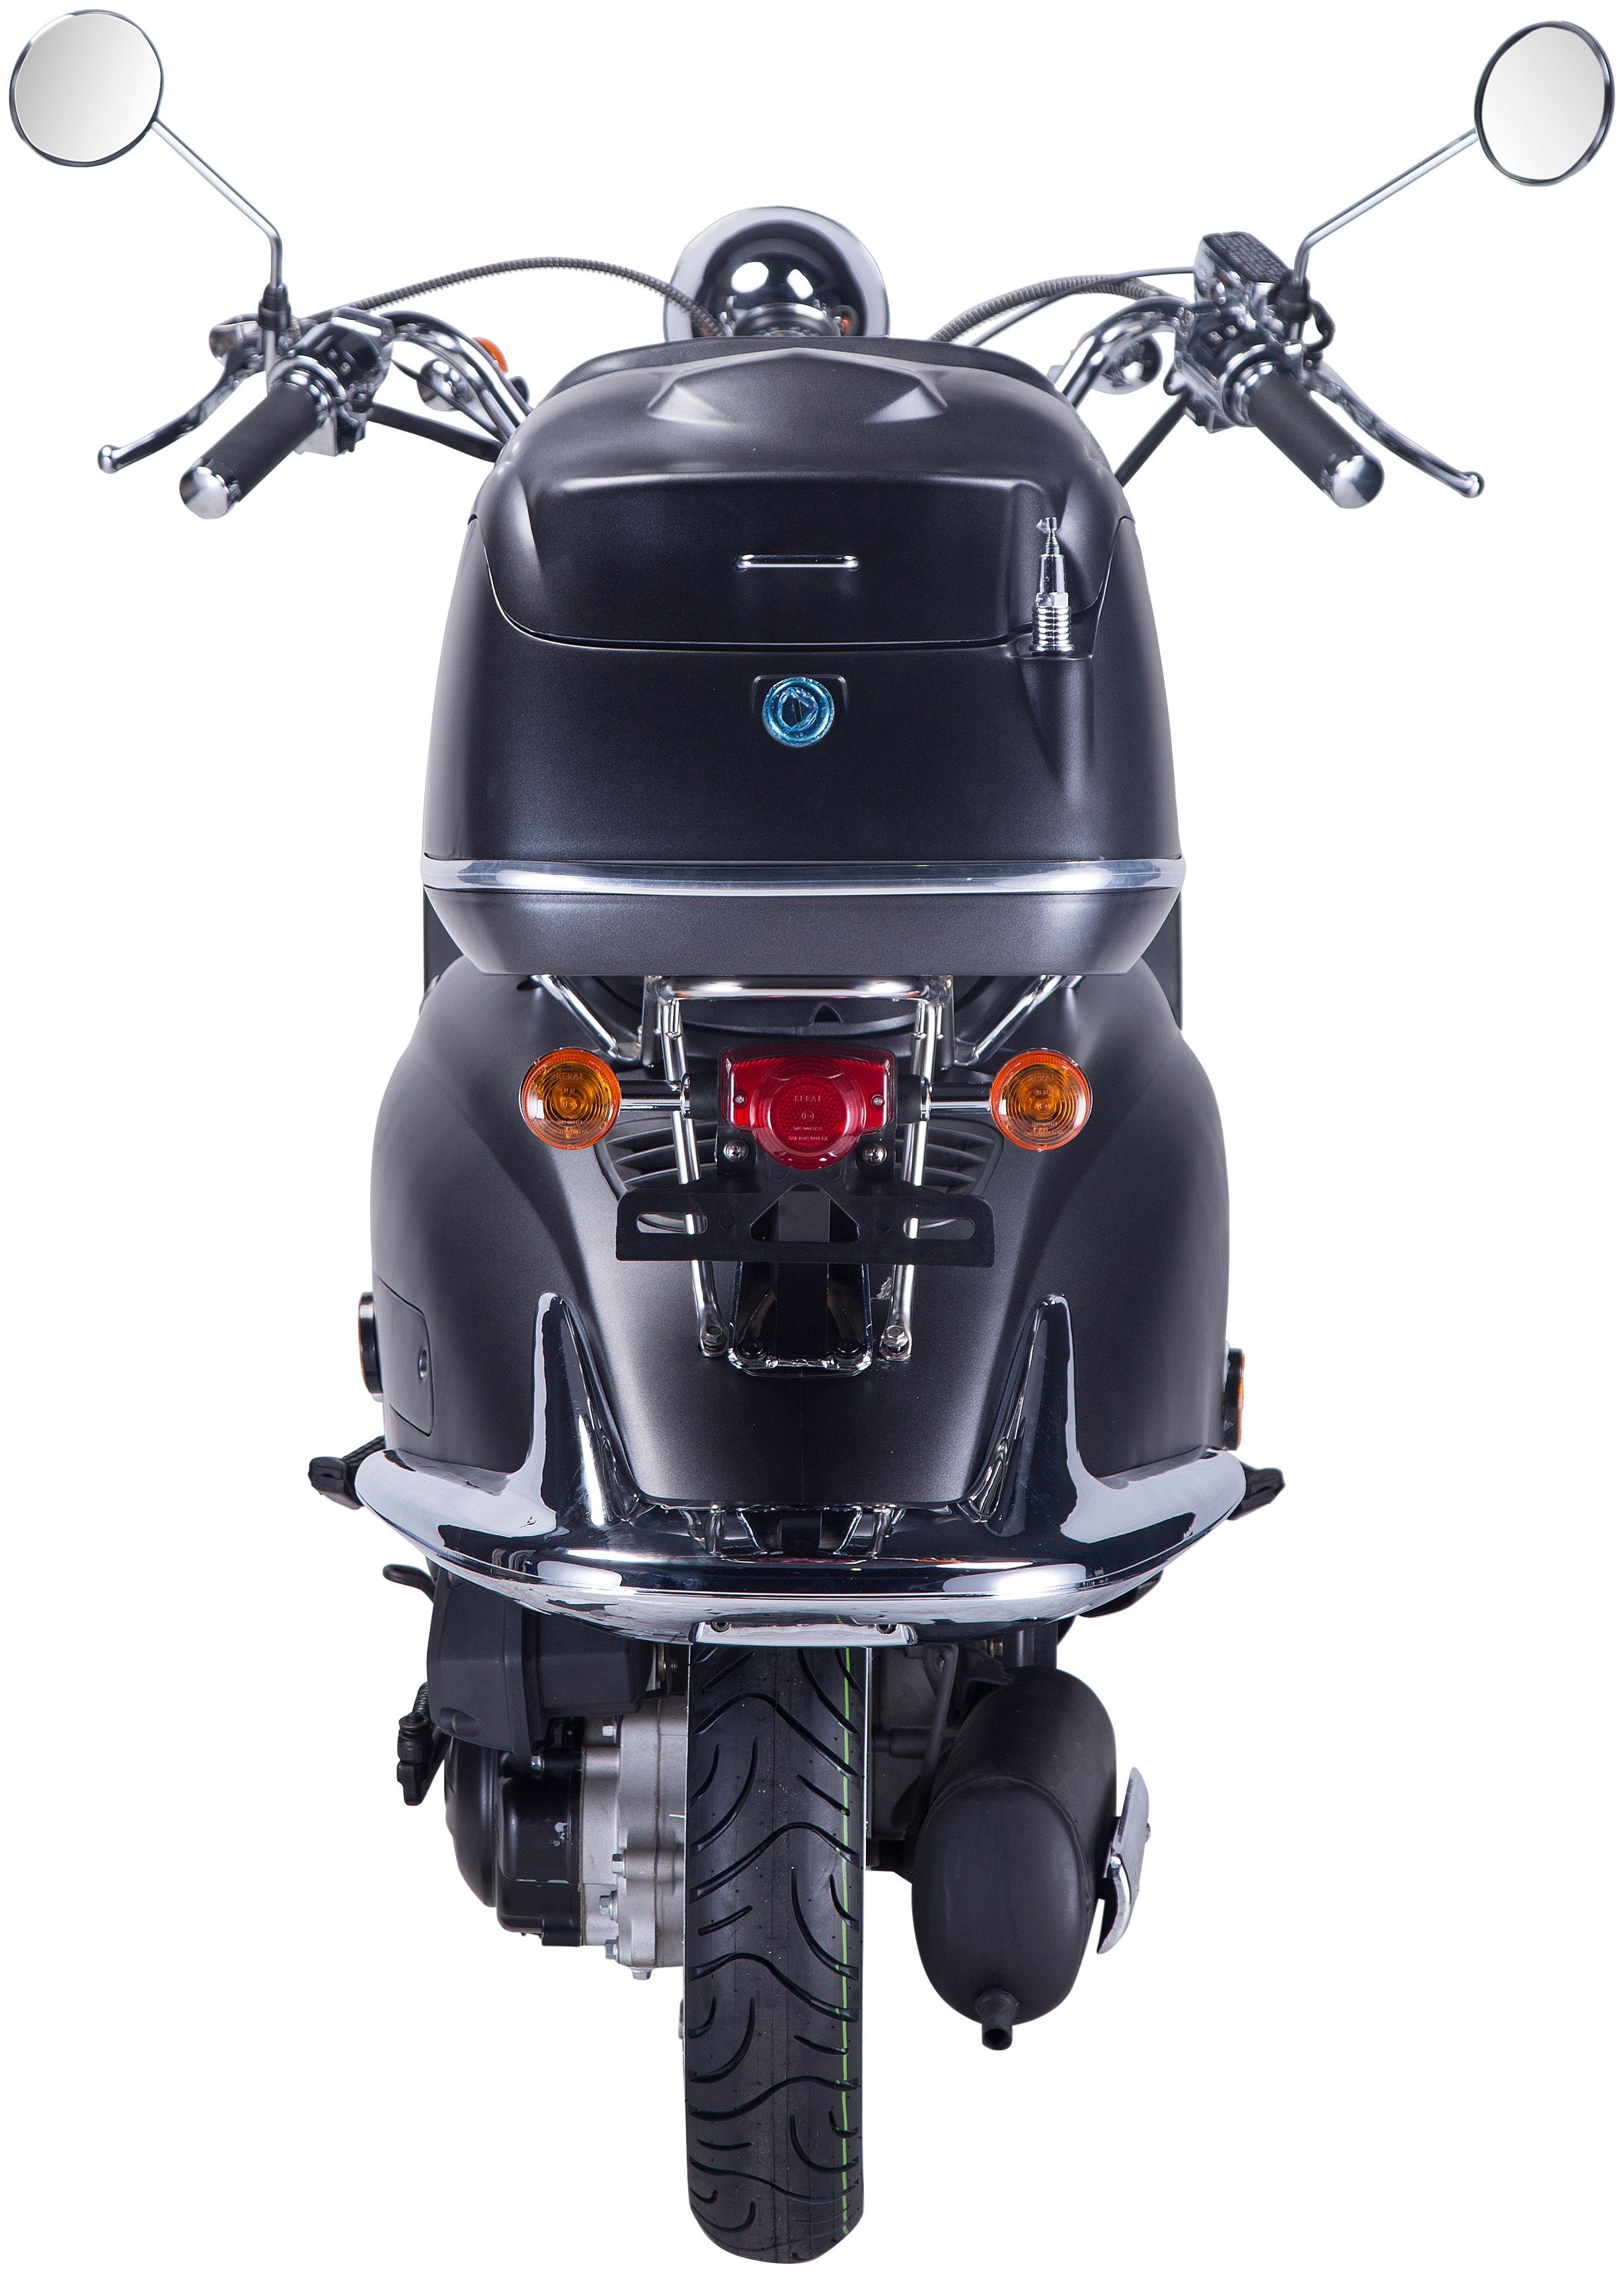 GT UNION Motorroller Strada, 85 Topcase Euro mit schwarz/silberfarben (Set), ccm, km/h, 125 5